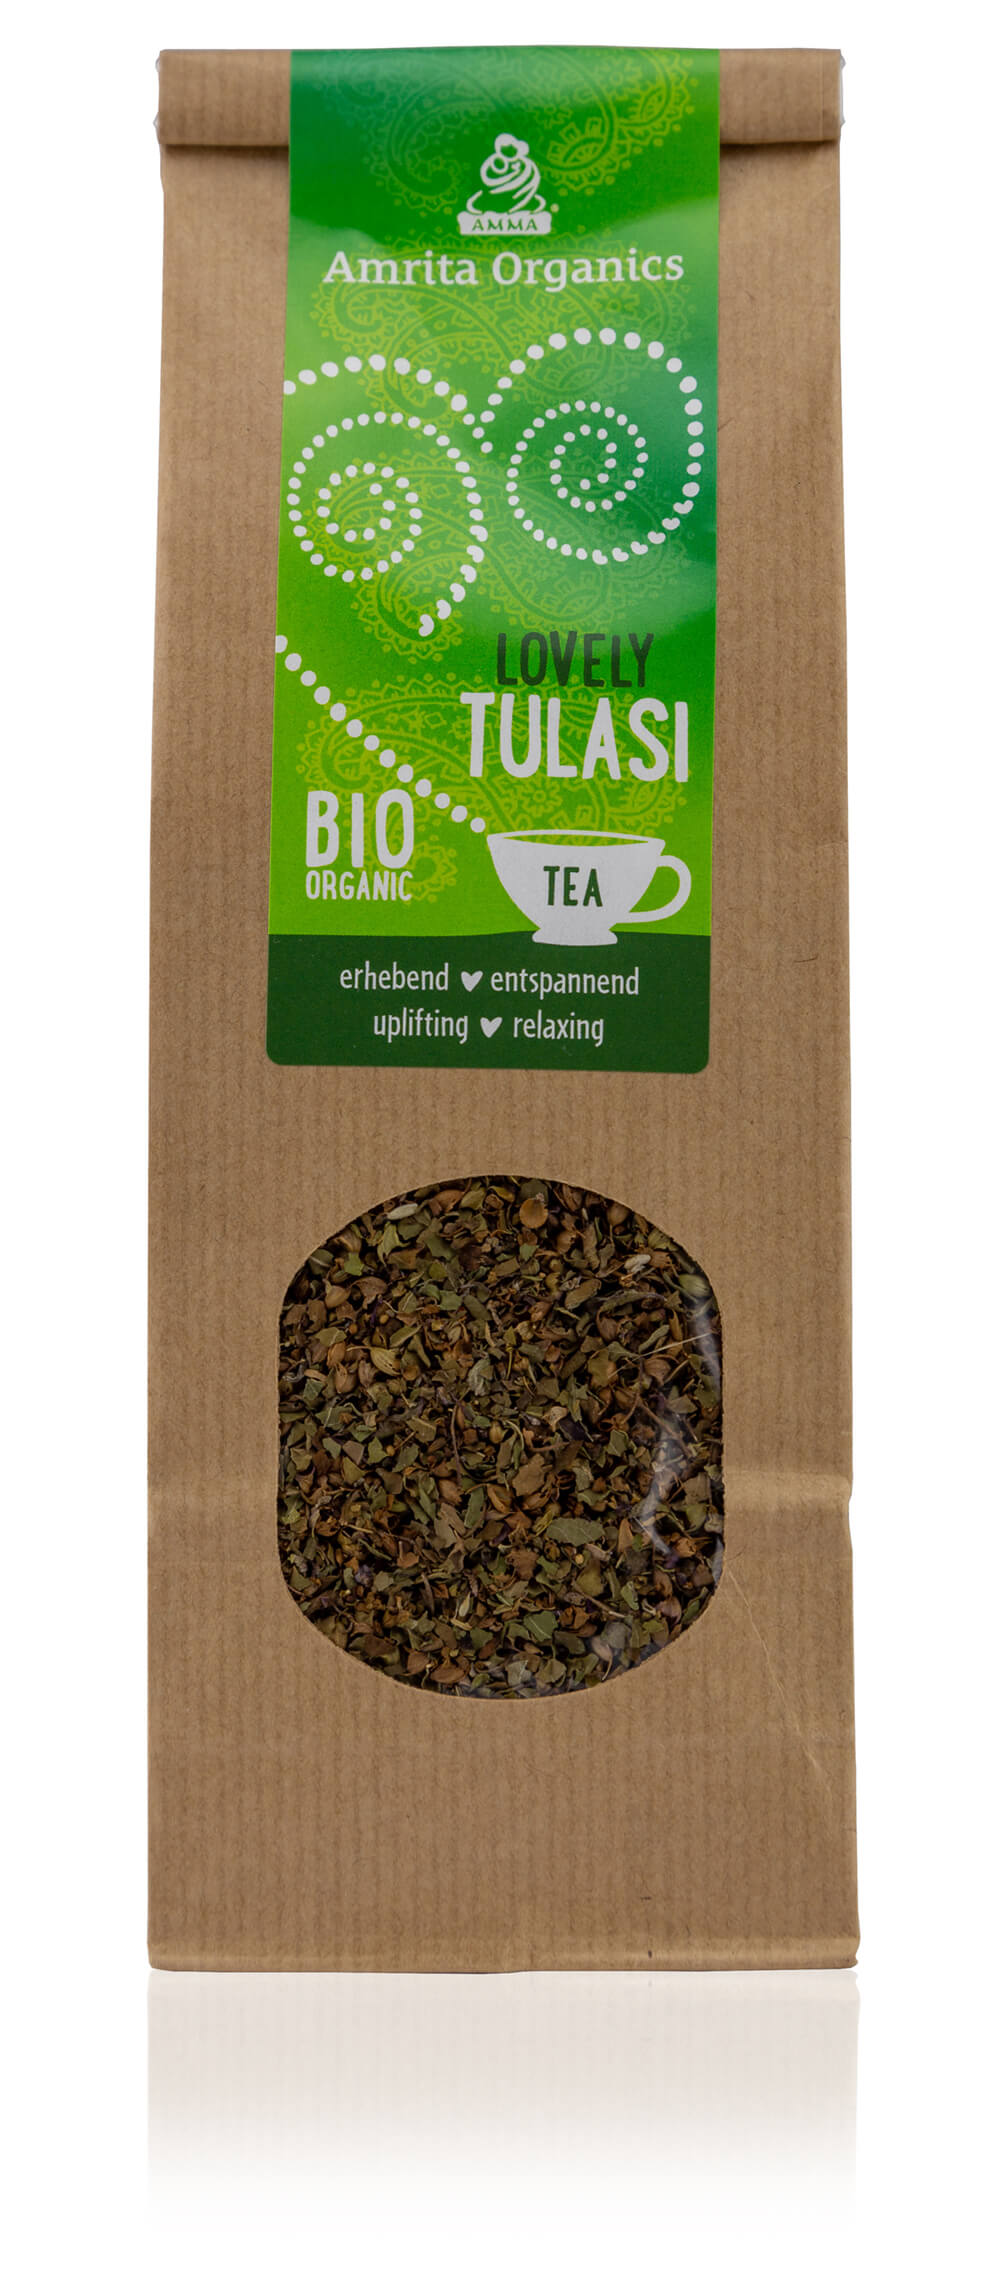 Lovely Tulsi Tea, organic